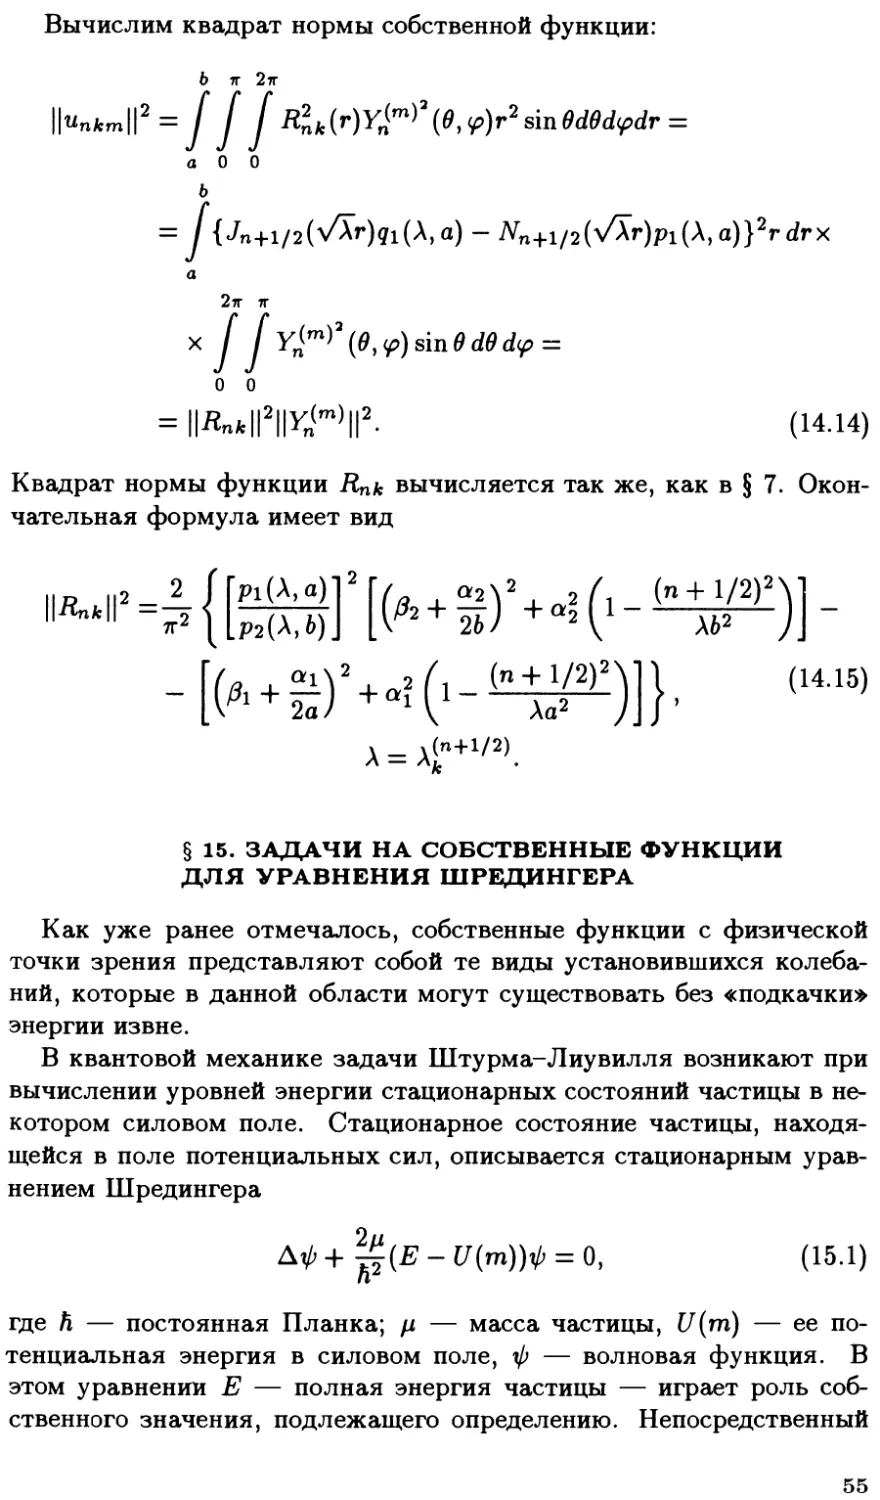 §15. Задачи на собственные функции для уравнения Шрёдингера